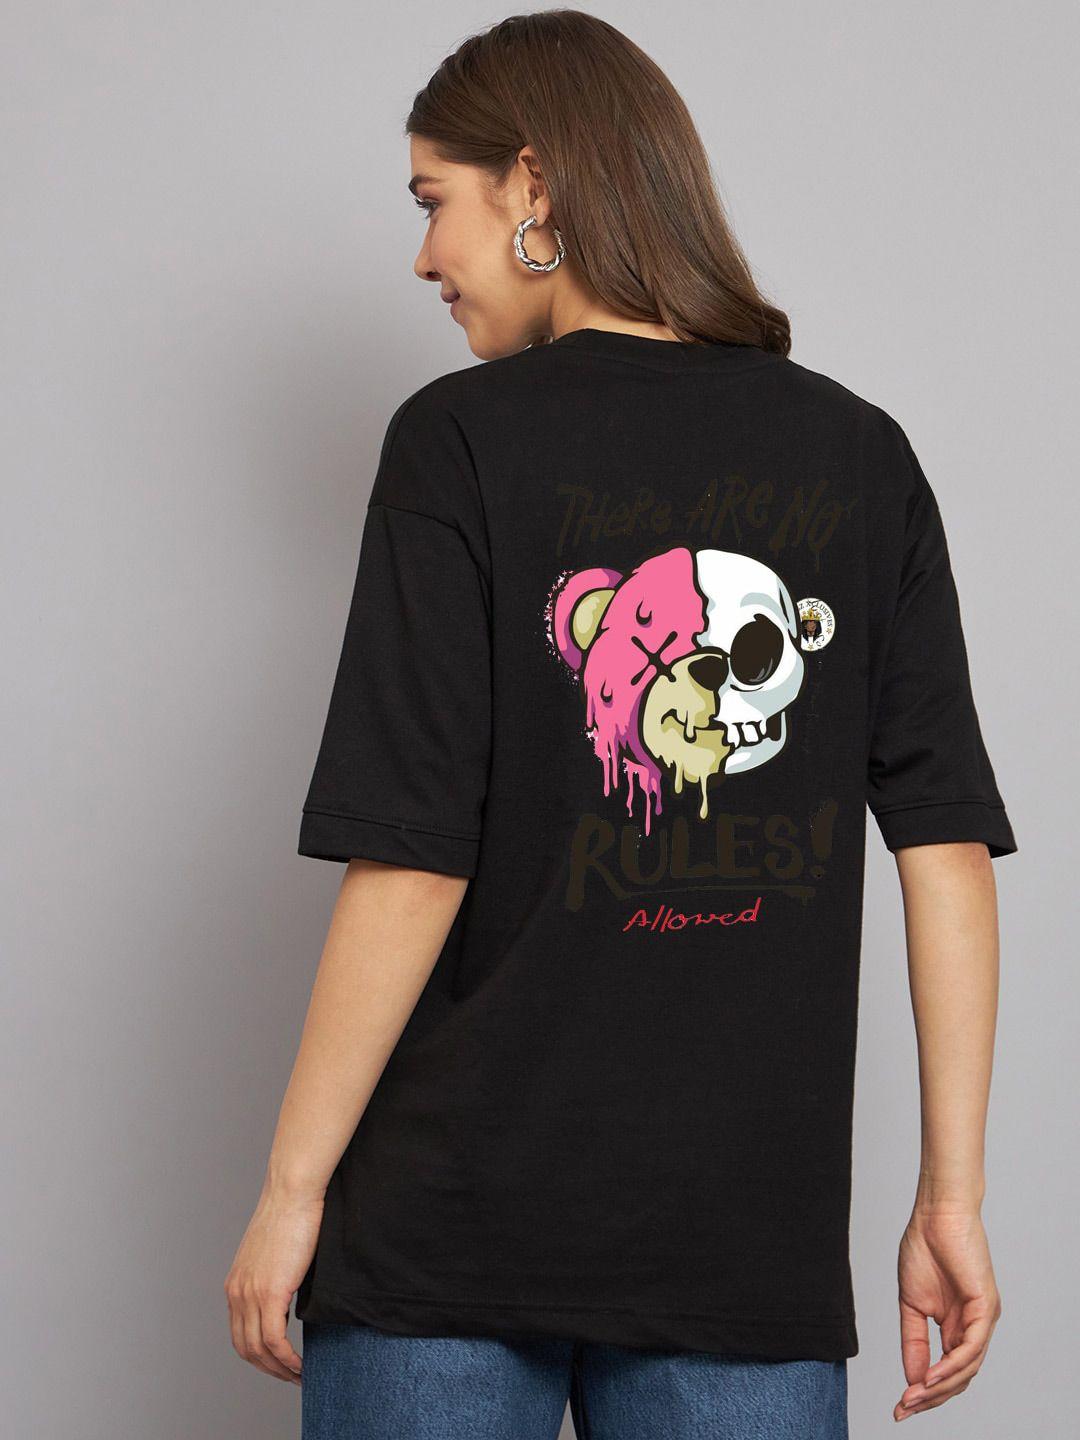 imsa moda women graphic printed cotton oversized t-shirt